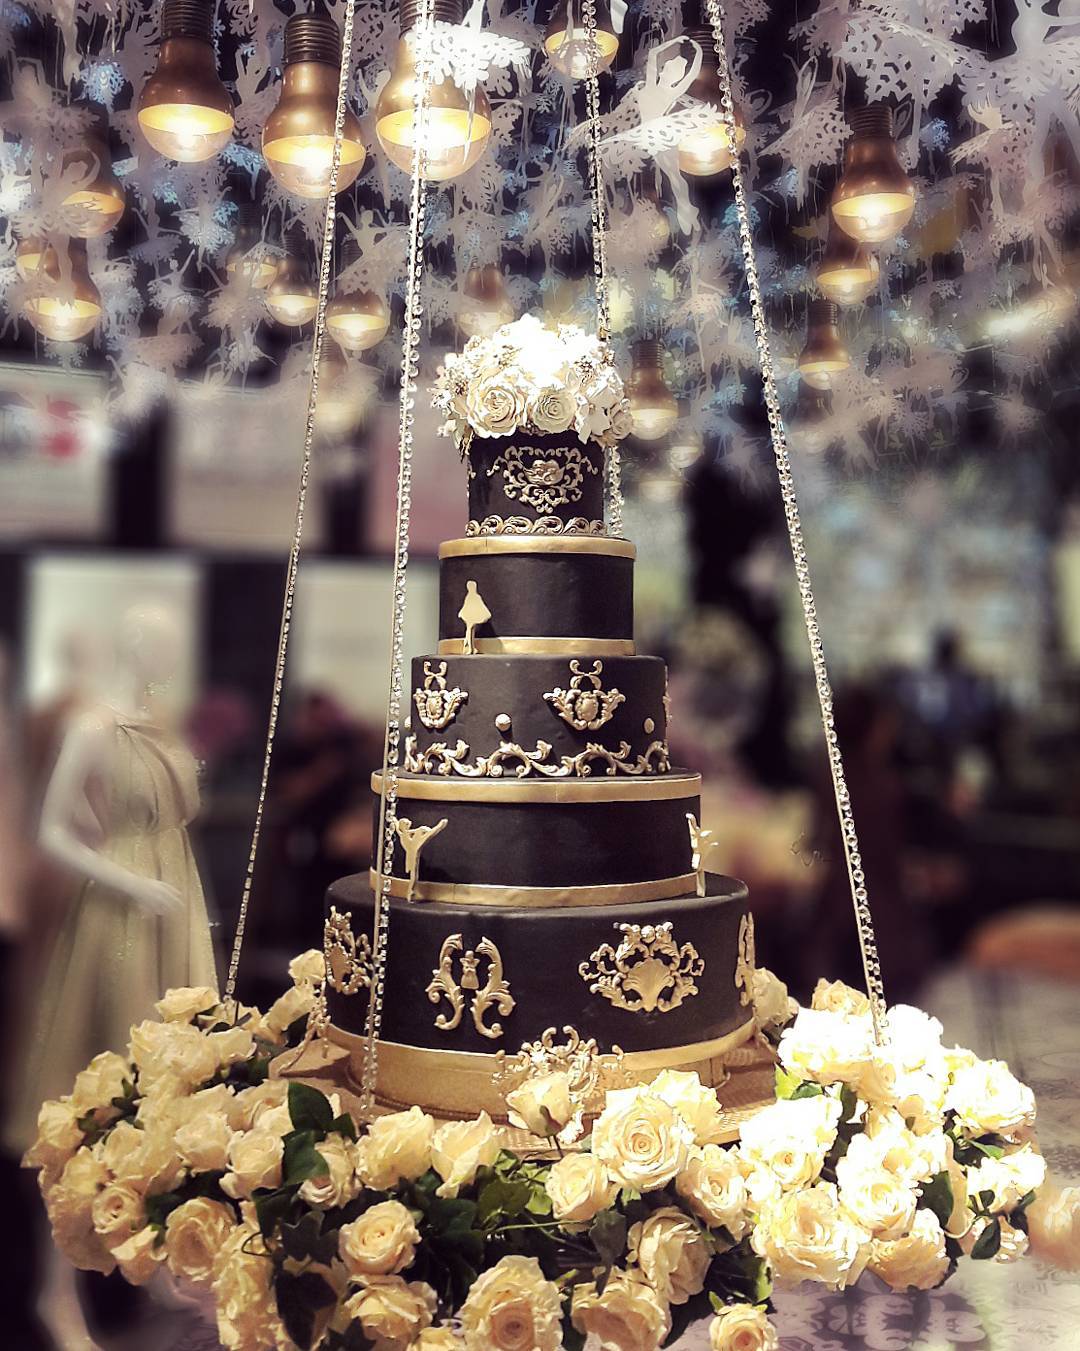 black wedding cake big cake with white flowers lenovellecake